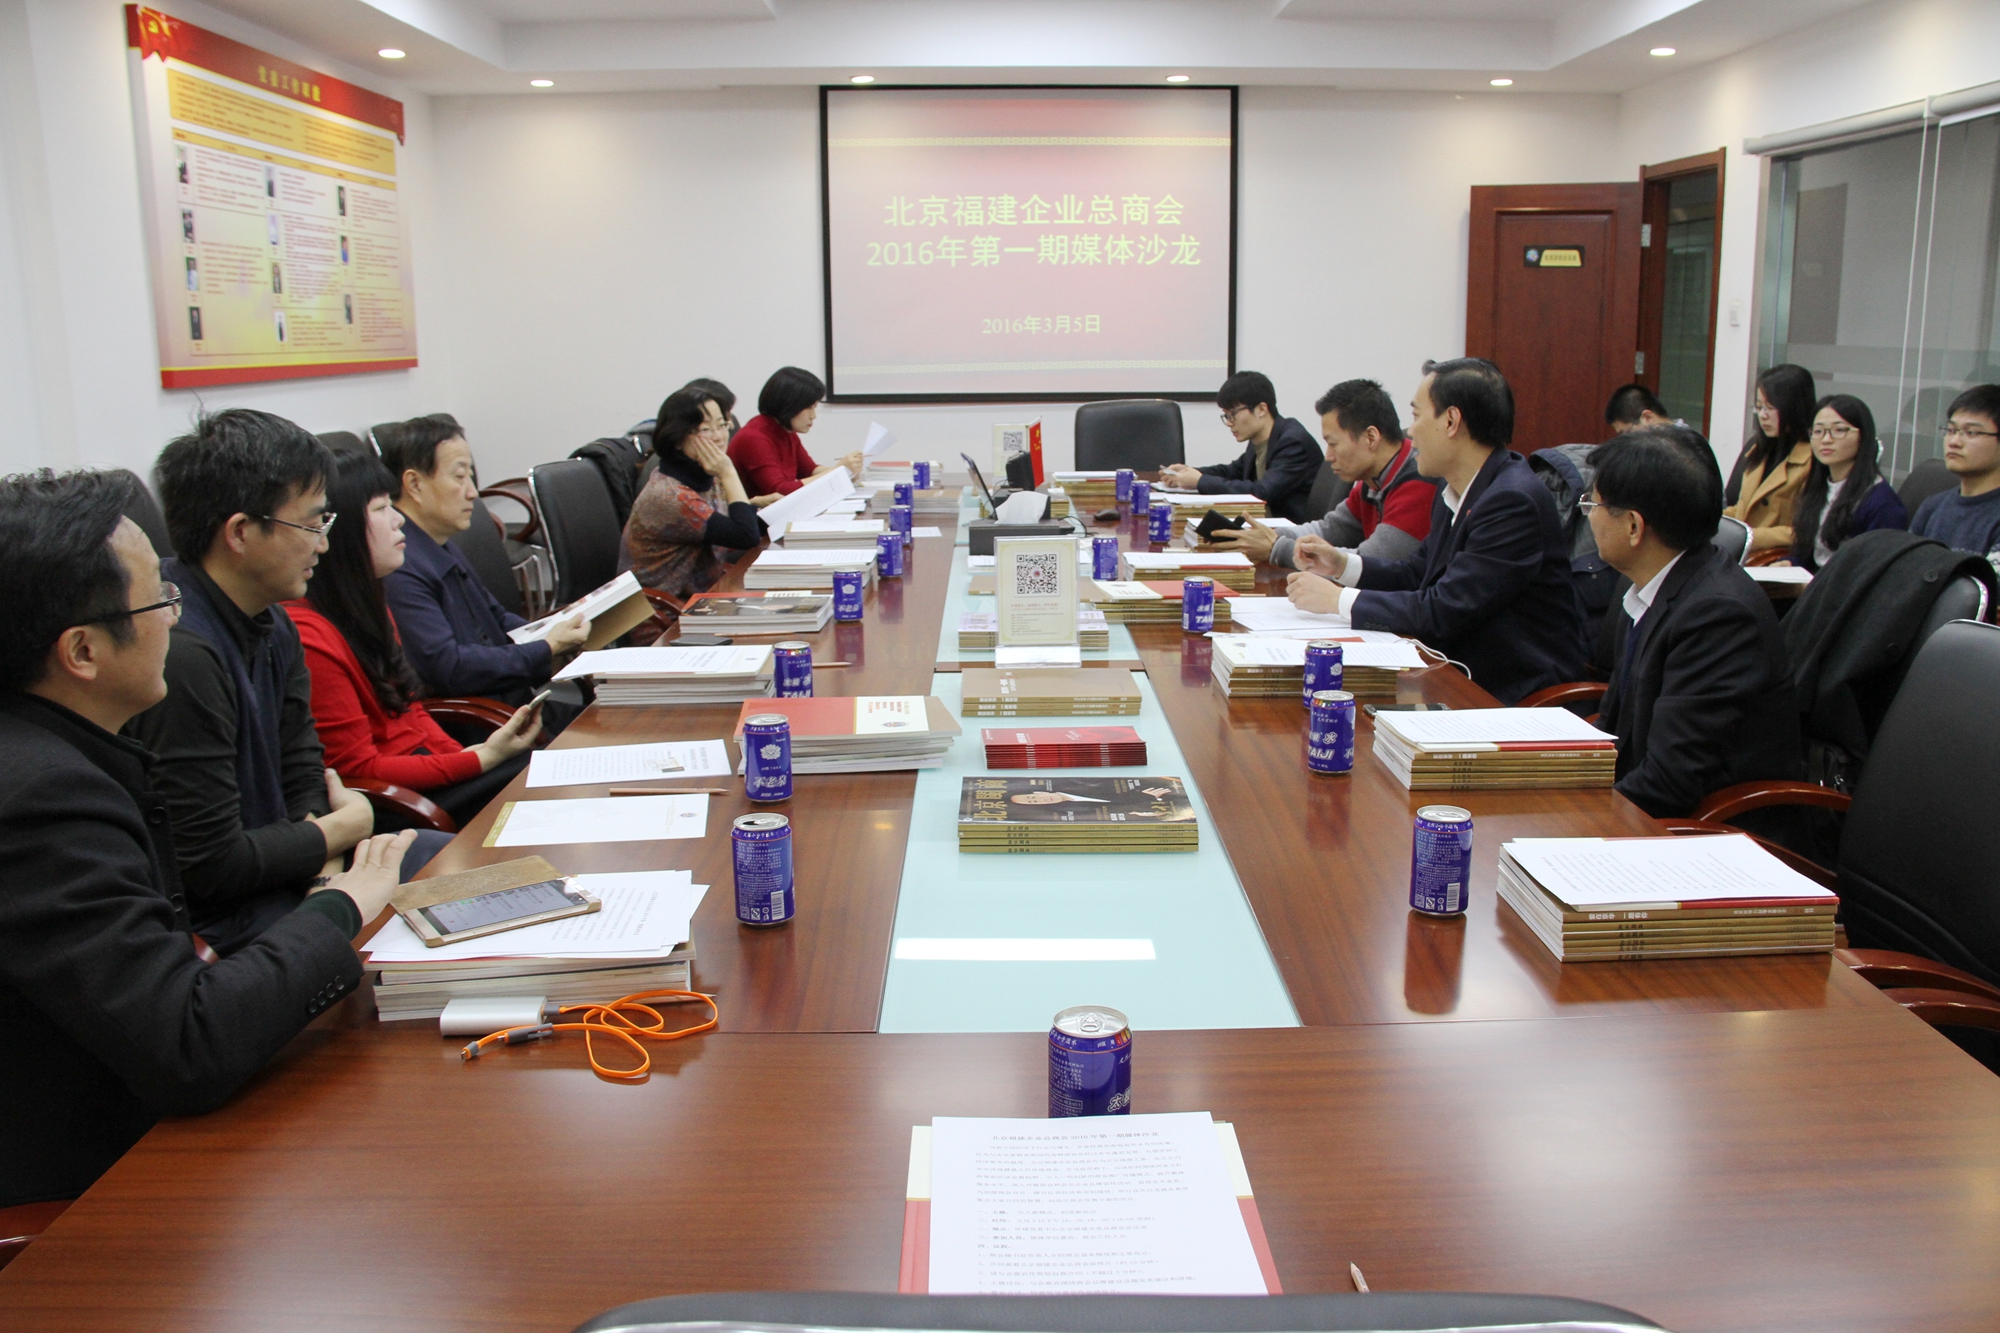 北京福建企业总商会举行2016年第一期媒体沙龙